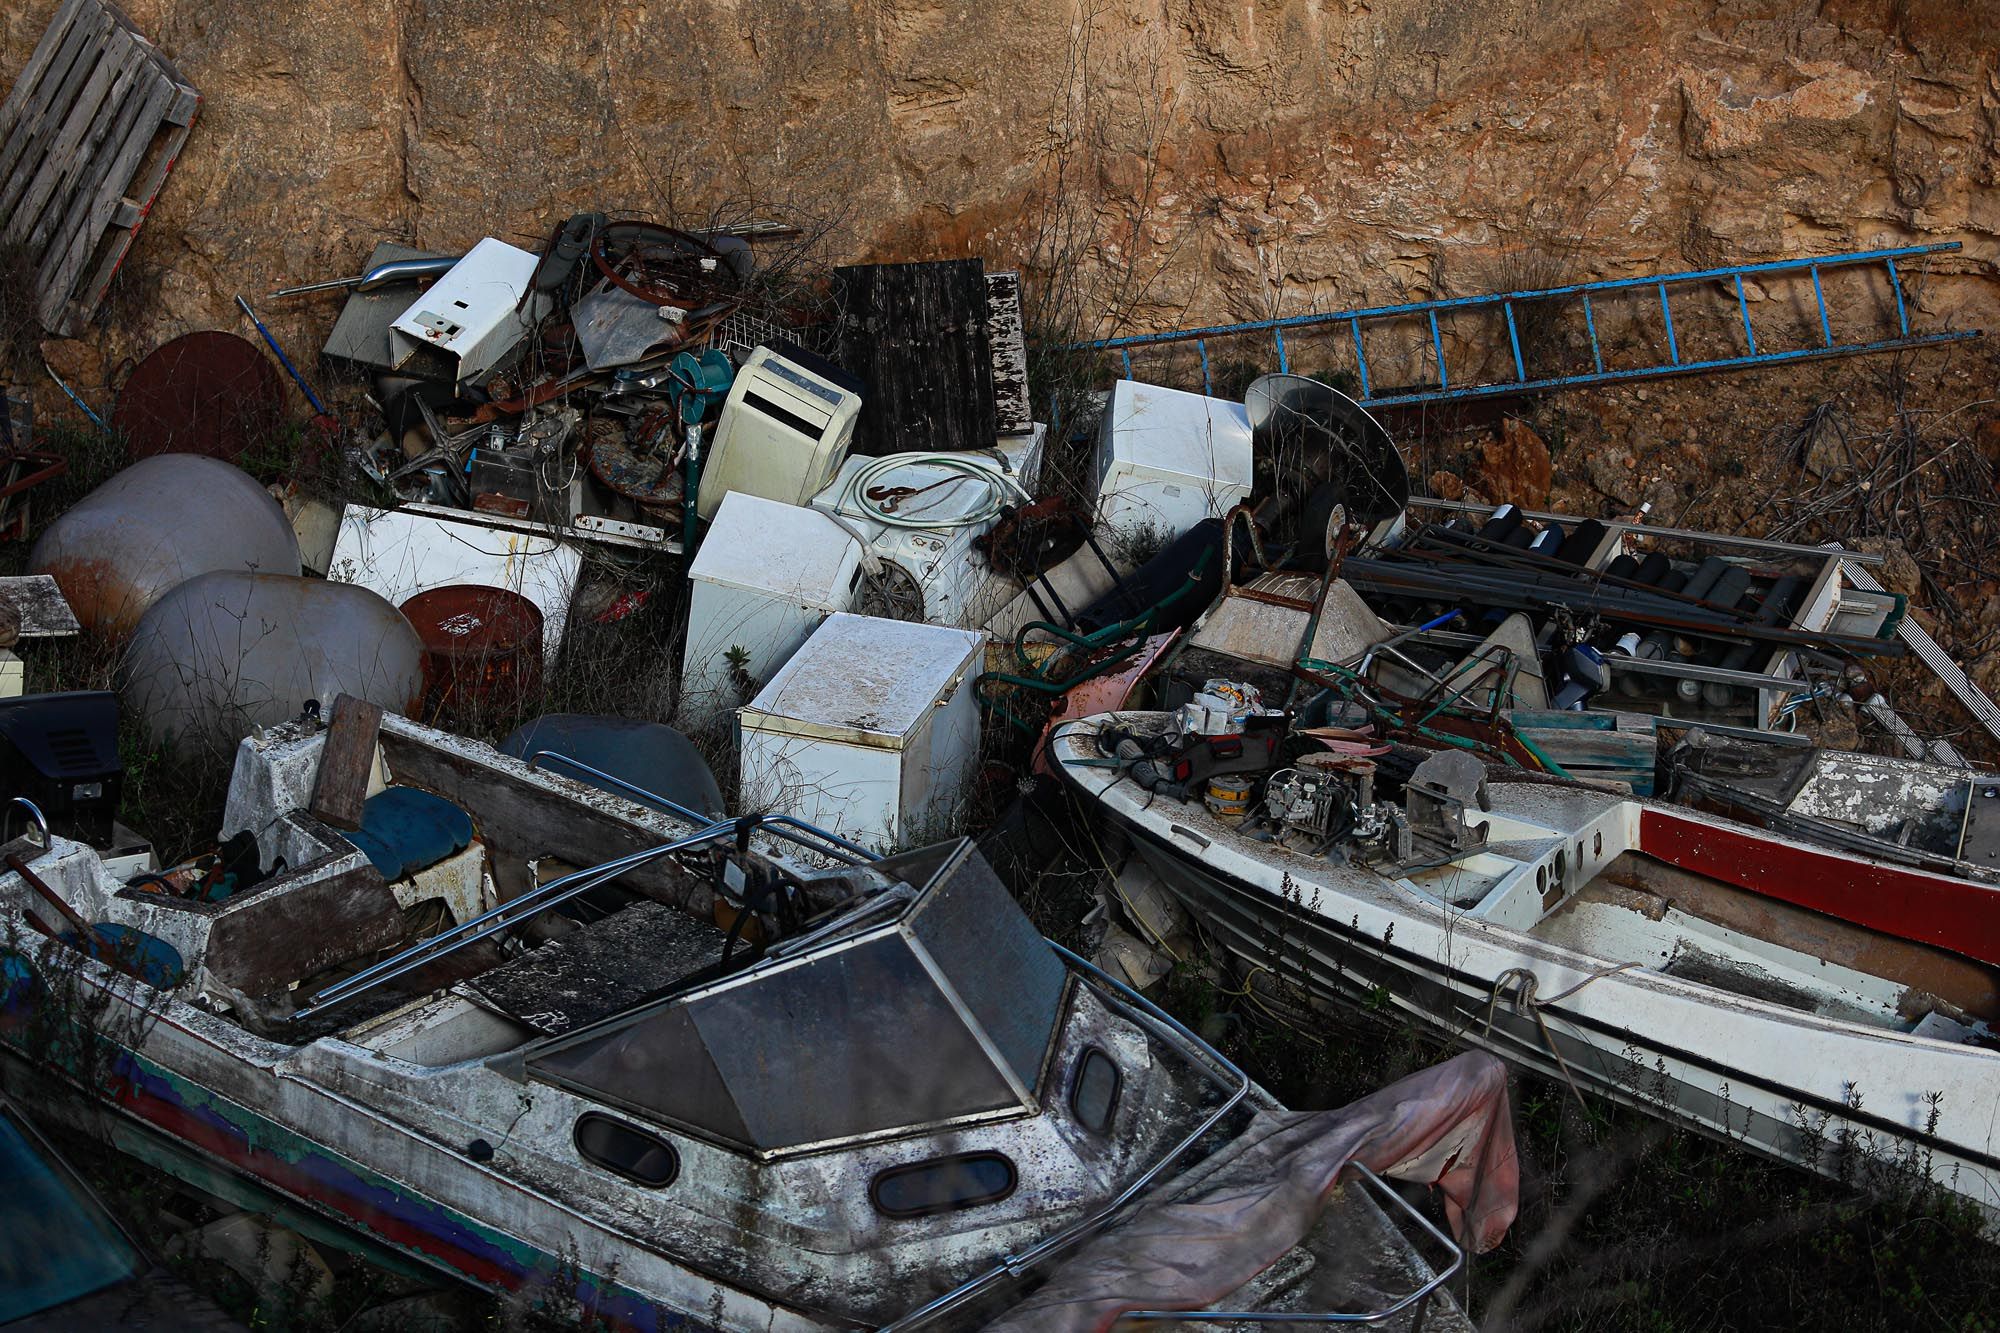 Retirada de barcos almacenados ilegalmente en Cala Tarida